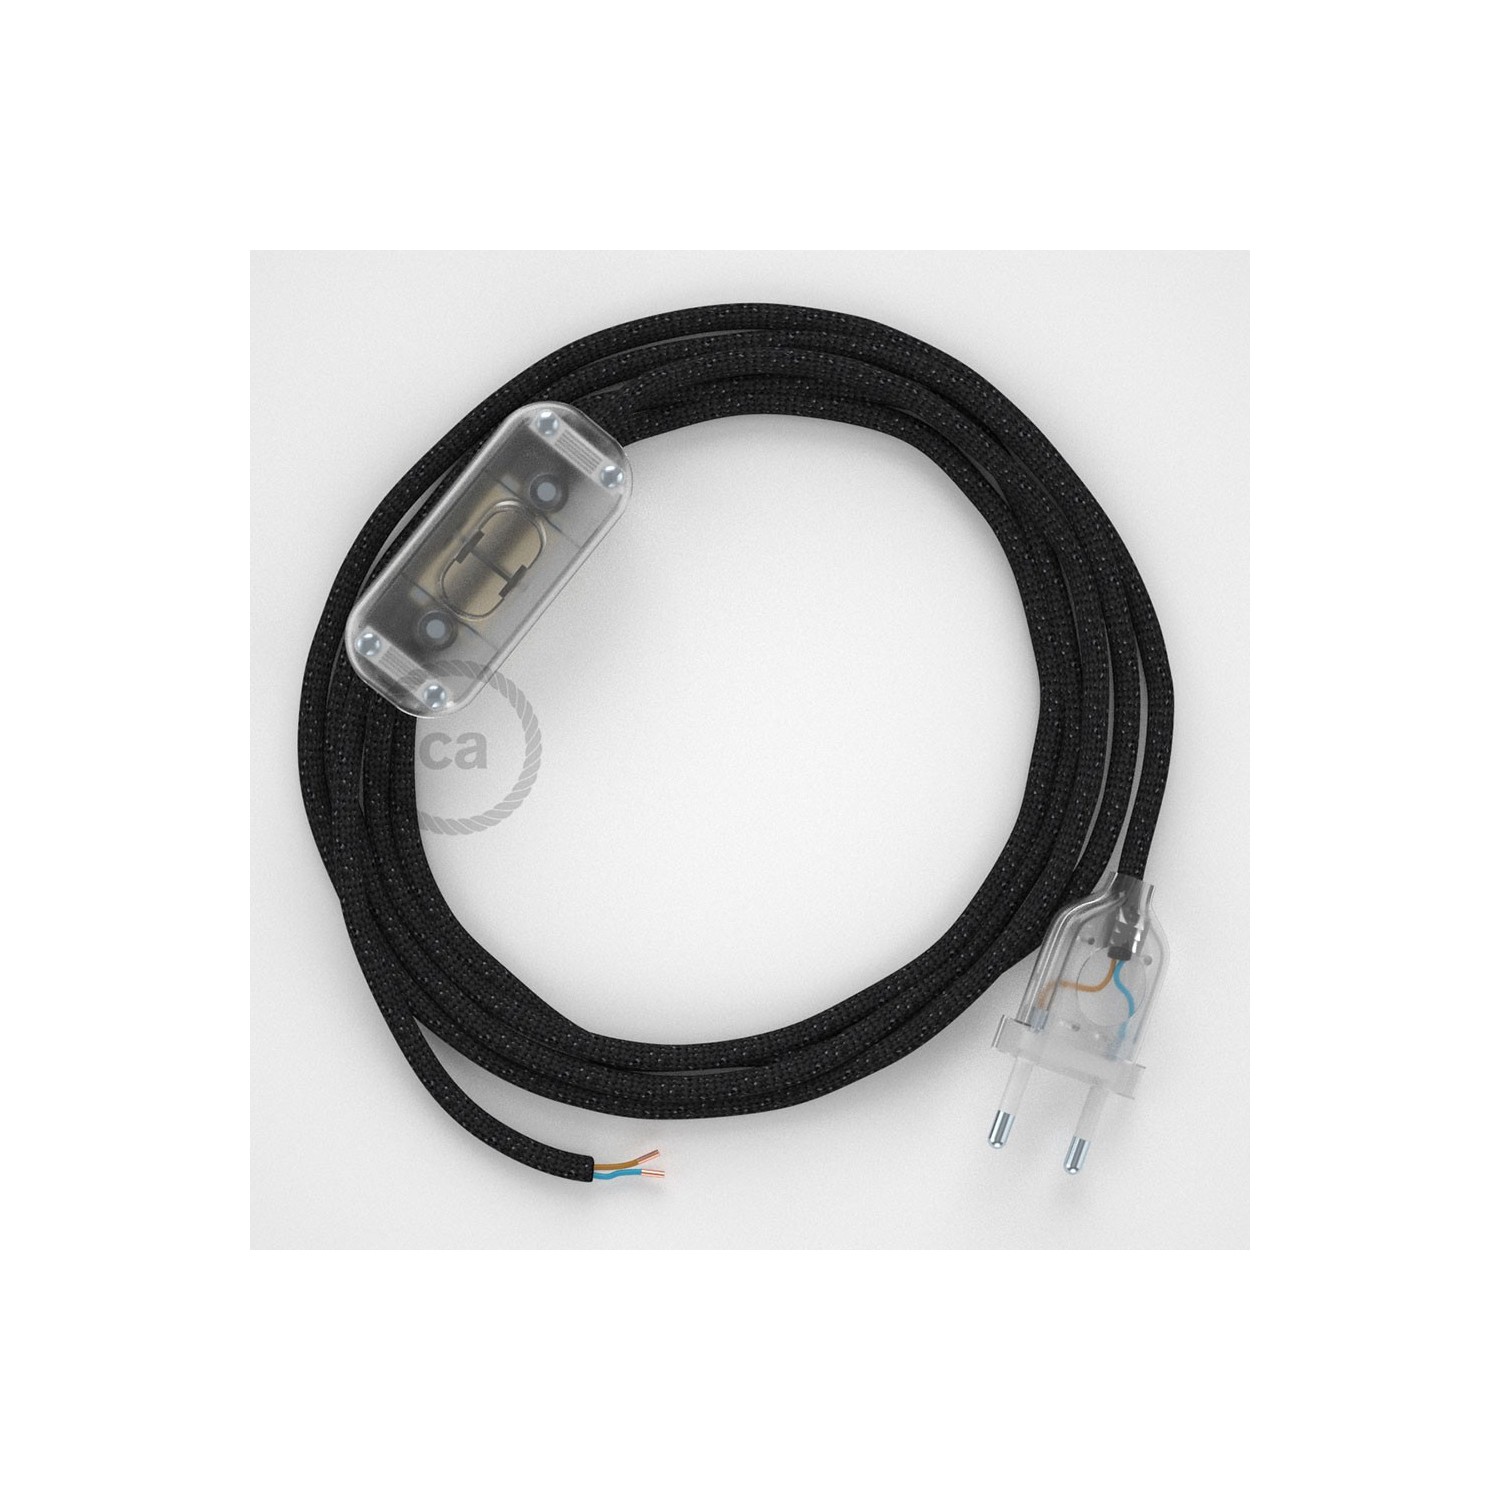 Cordon pour lampe, câble RL04 Effet Soie Paillettes Noir 1,80 m. Choisissez la couleur de la fiche et de l'interrupteur!